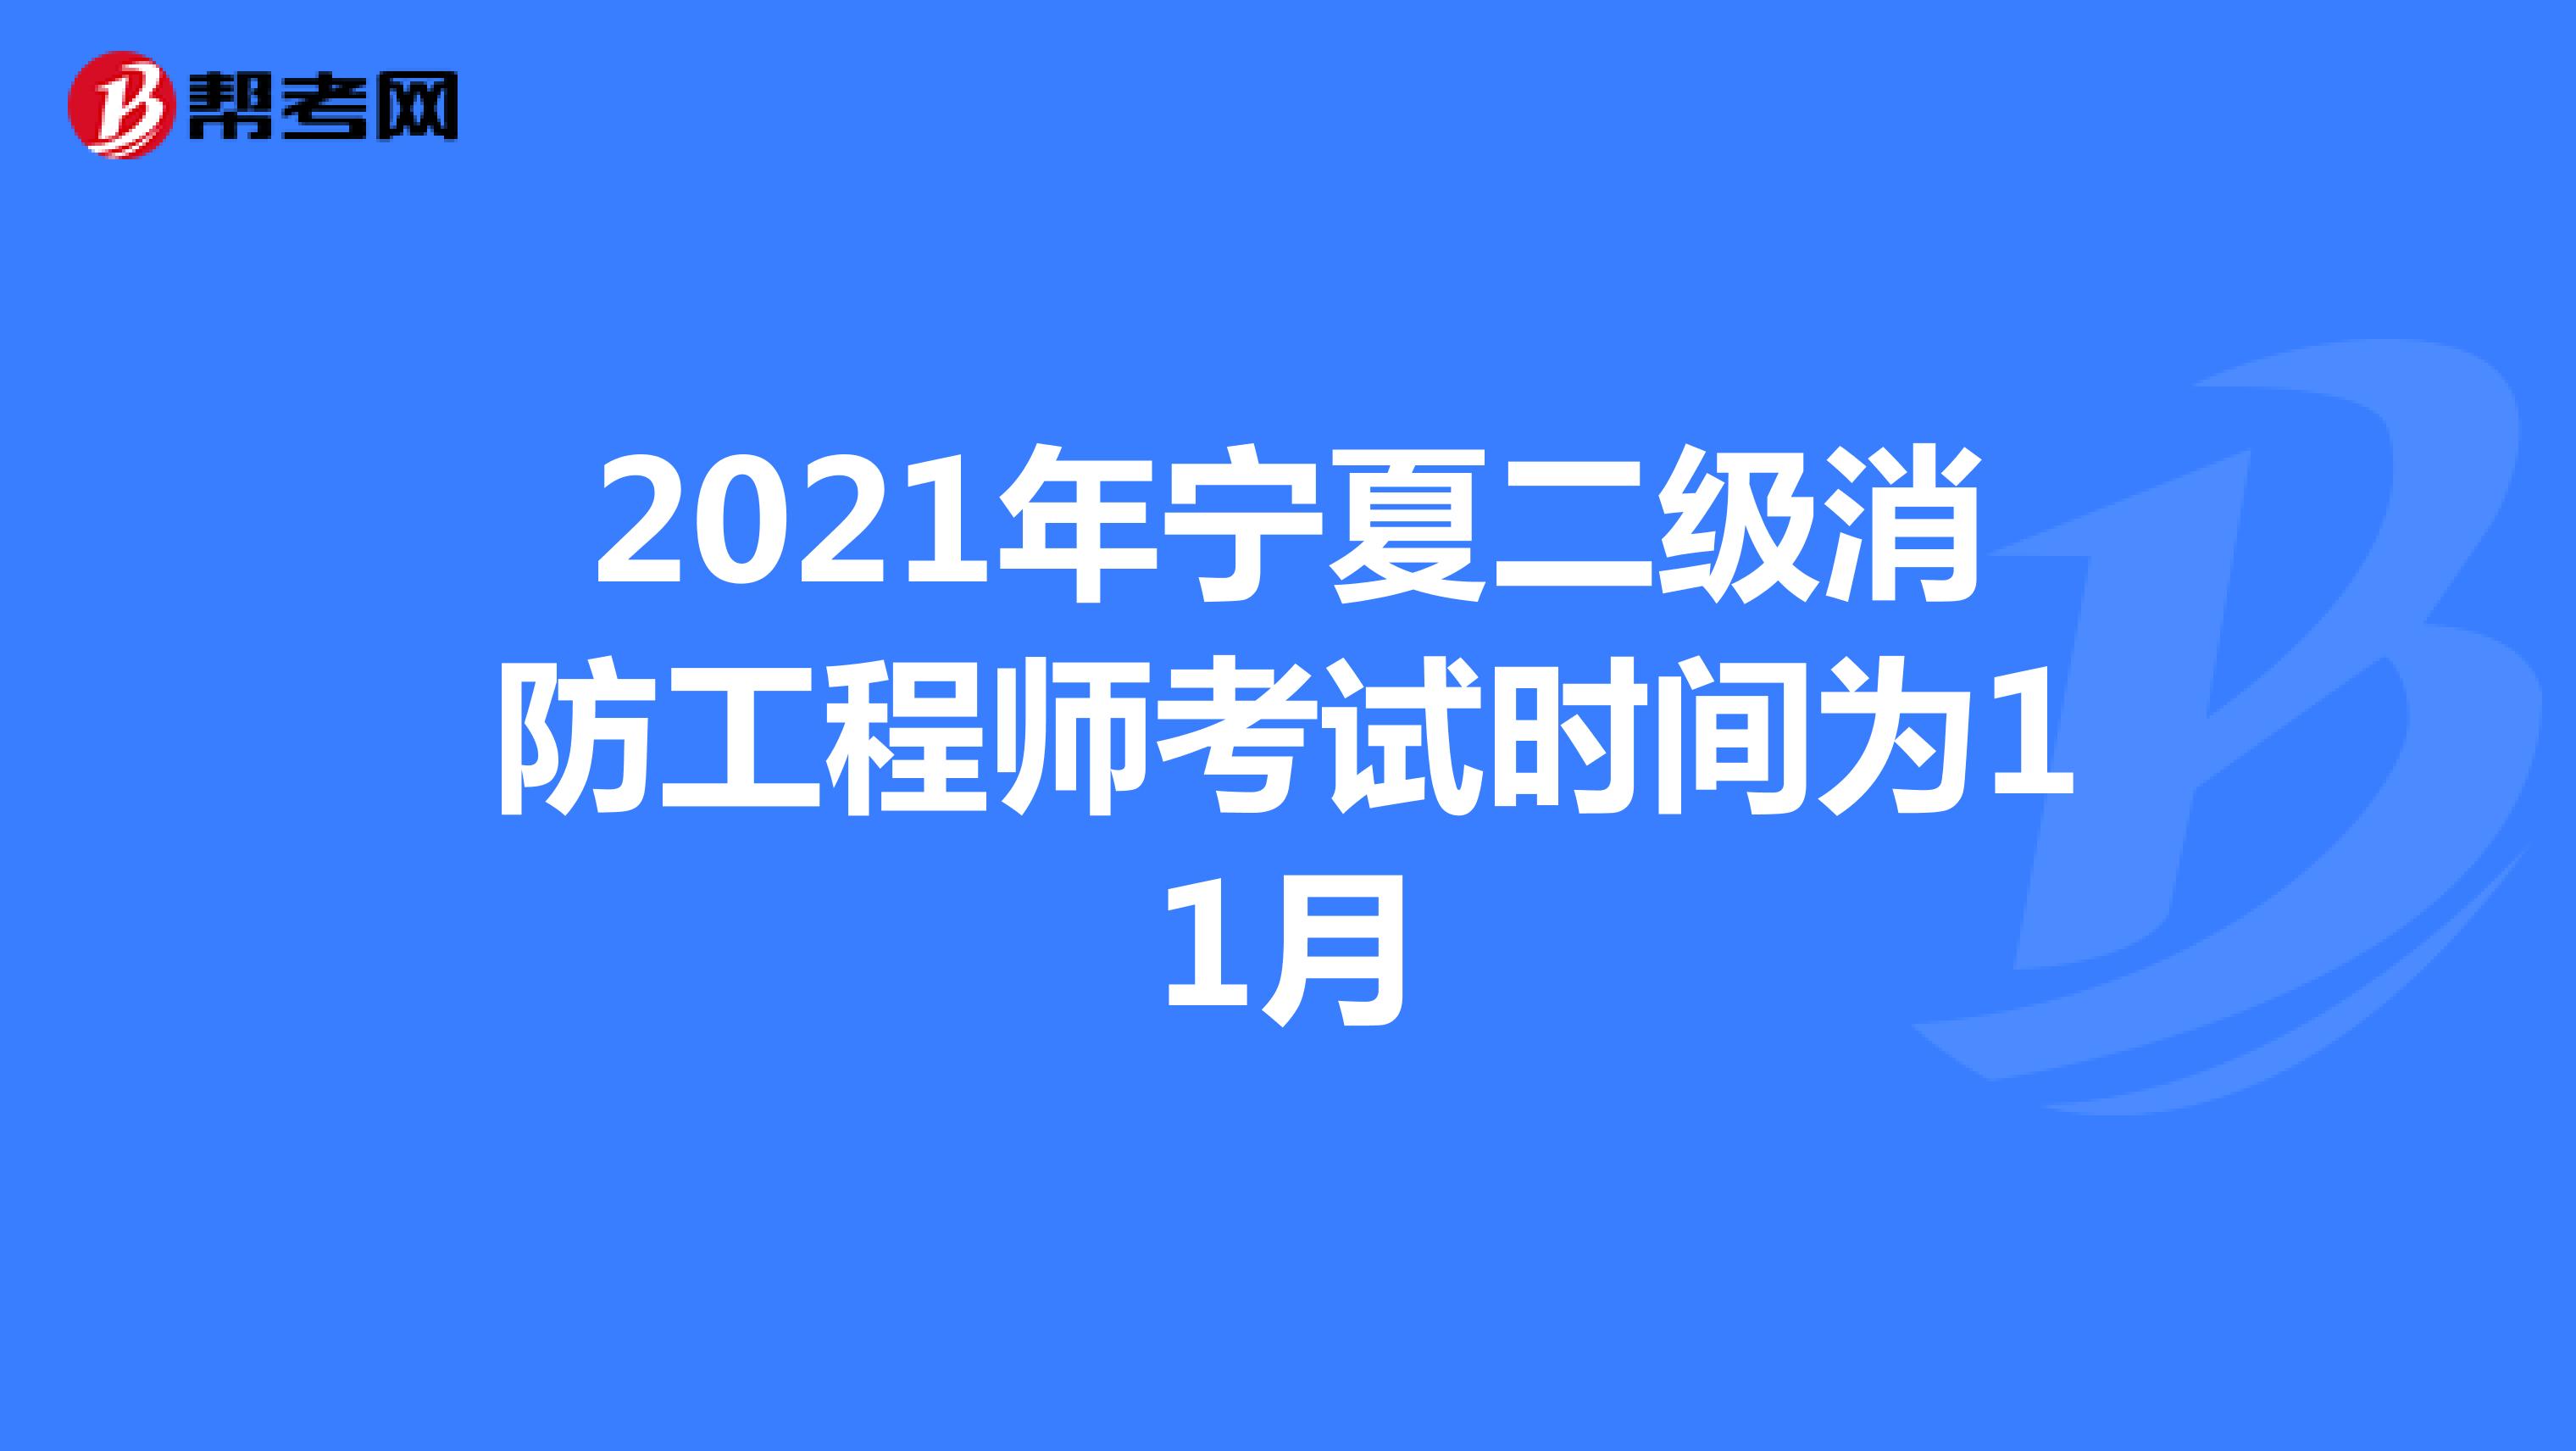 2021年宁夏二级消防工程师考试时间为11月